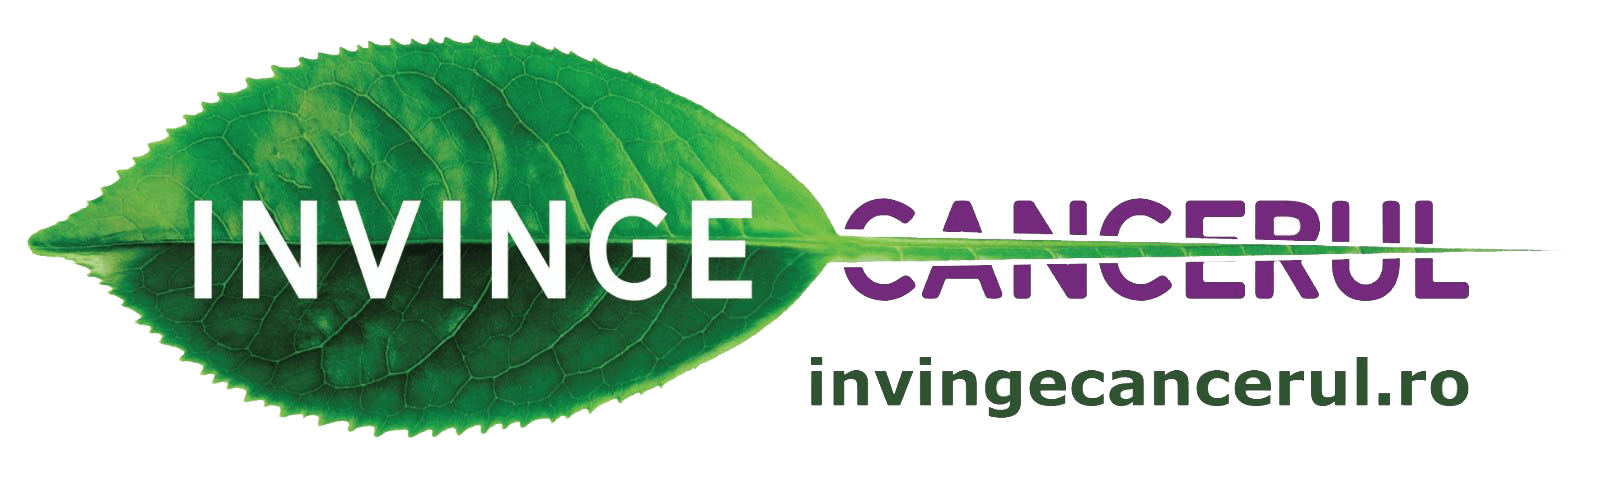 Logo InvingeCancerul